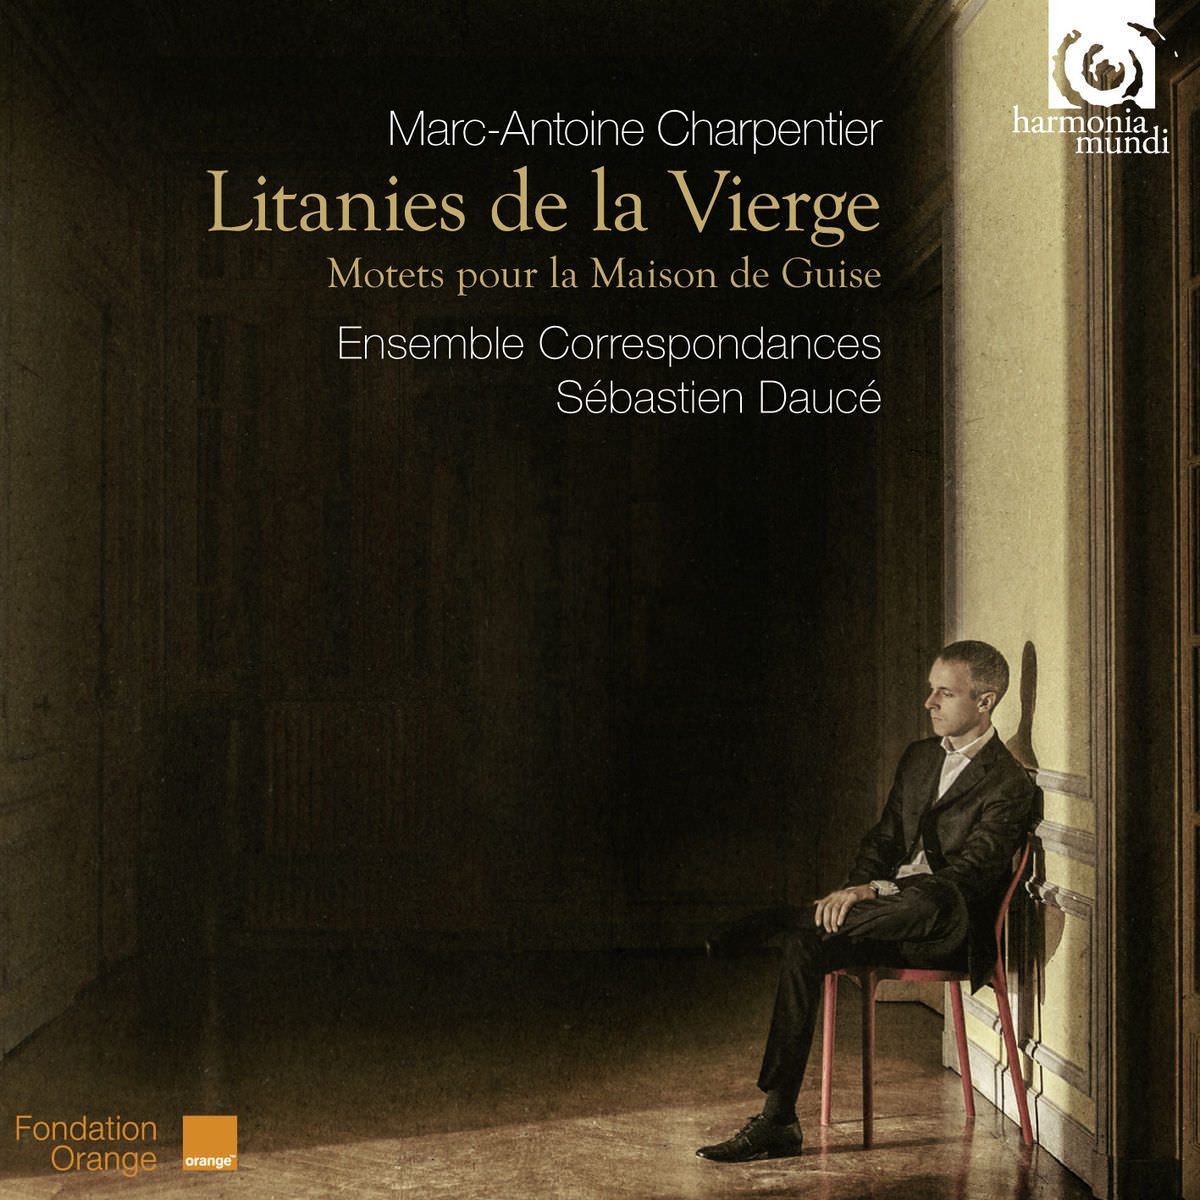 Ensemble Correspondances & Sebastien Dauce - Charpentier: Litanies de la Vierge, Motets pour la maison de Guise (2014) [Qobuz FLAC 24bit/88,2kHz]